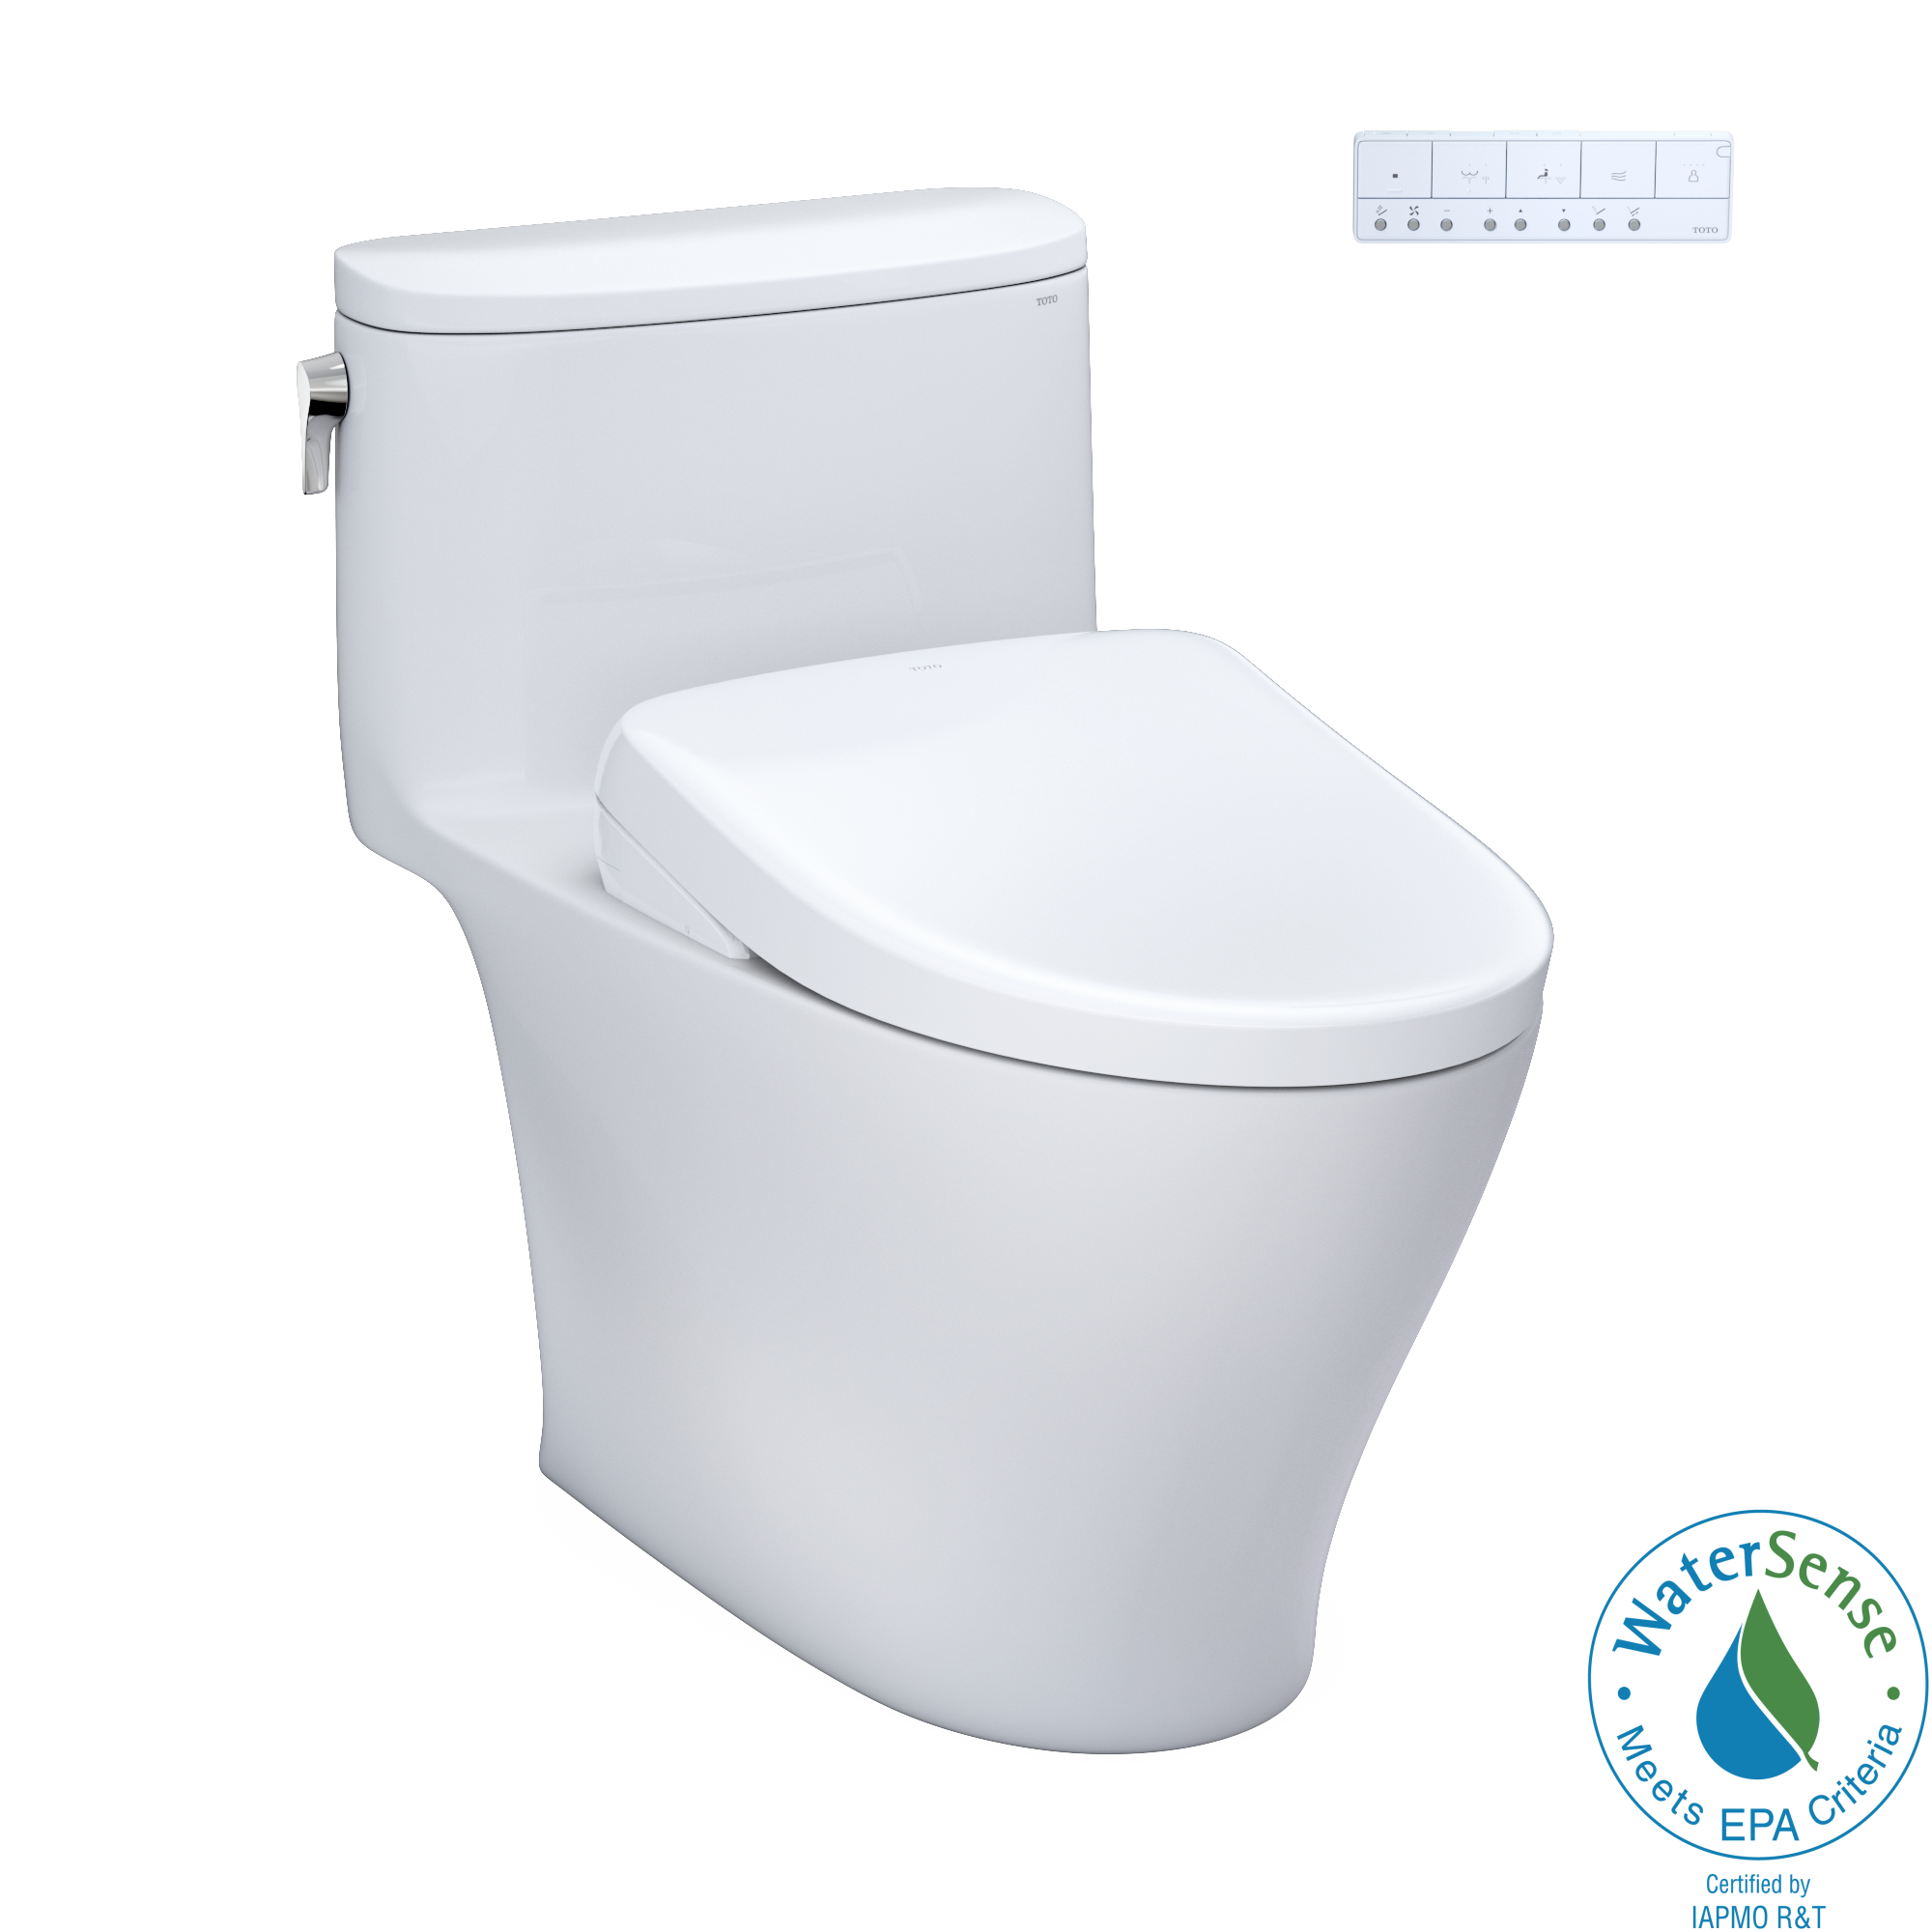 TOTO WASHLET+ Nexus One-Piece Elongated 1.28 GPF Toilet with S7 Contemporary Bidet Seat, Cotton White - MW6424726CEFG#01, MW6424726CEFGA#01